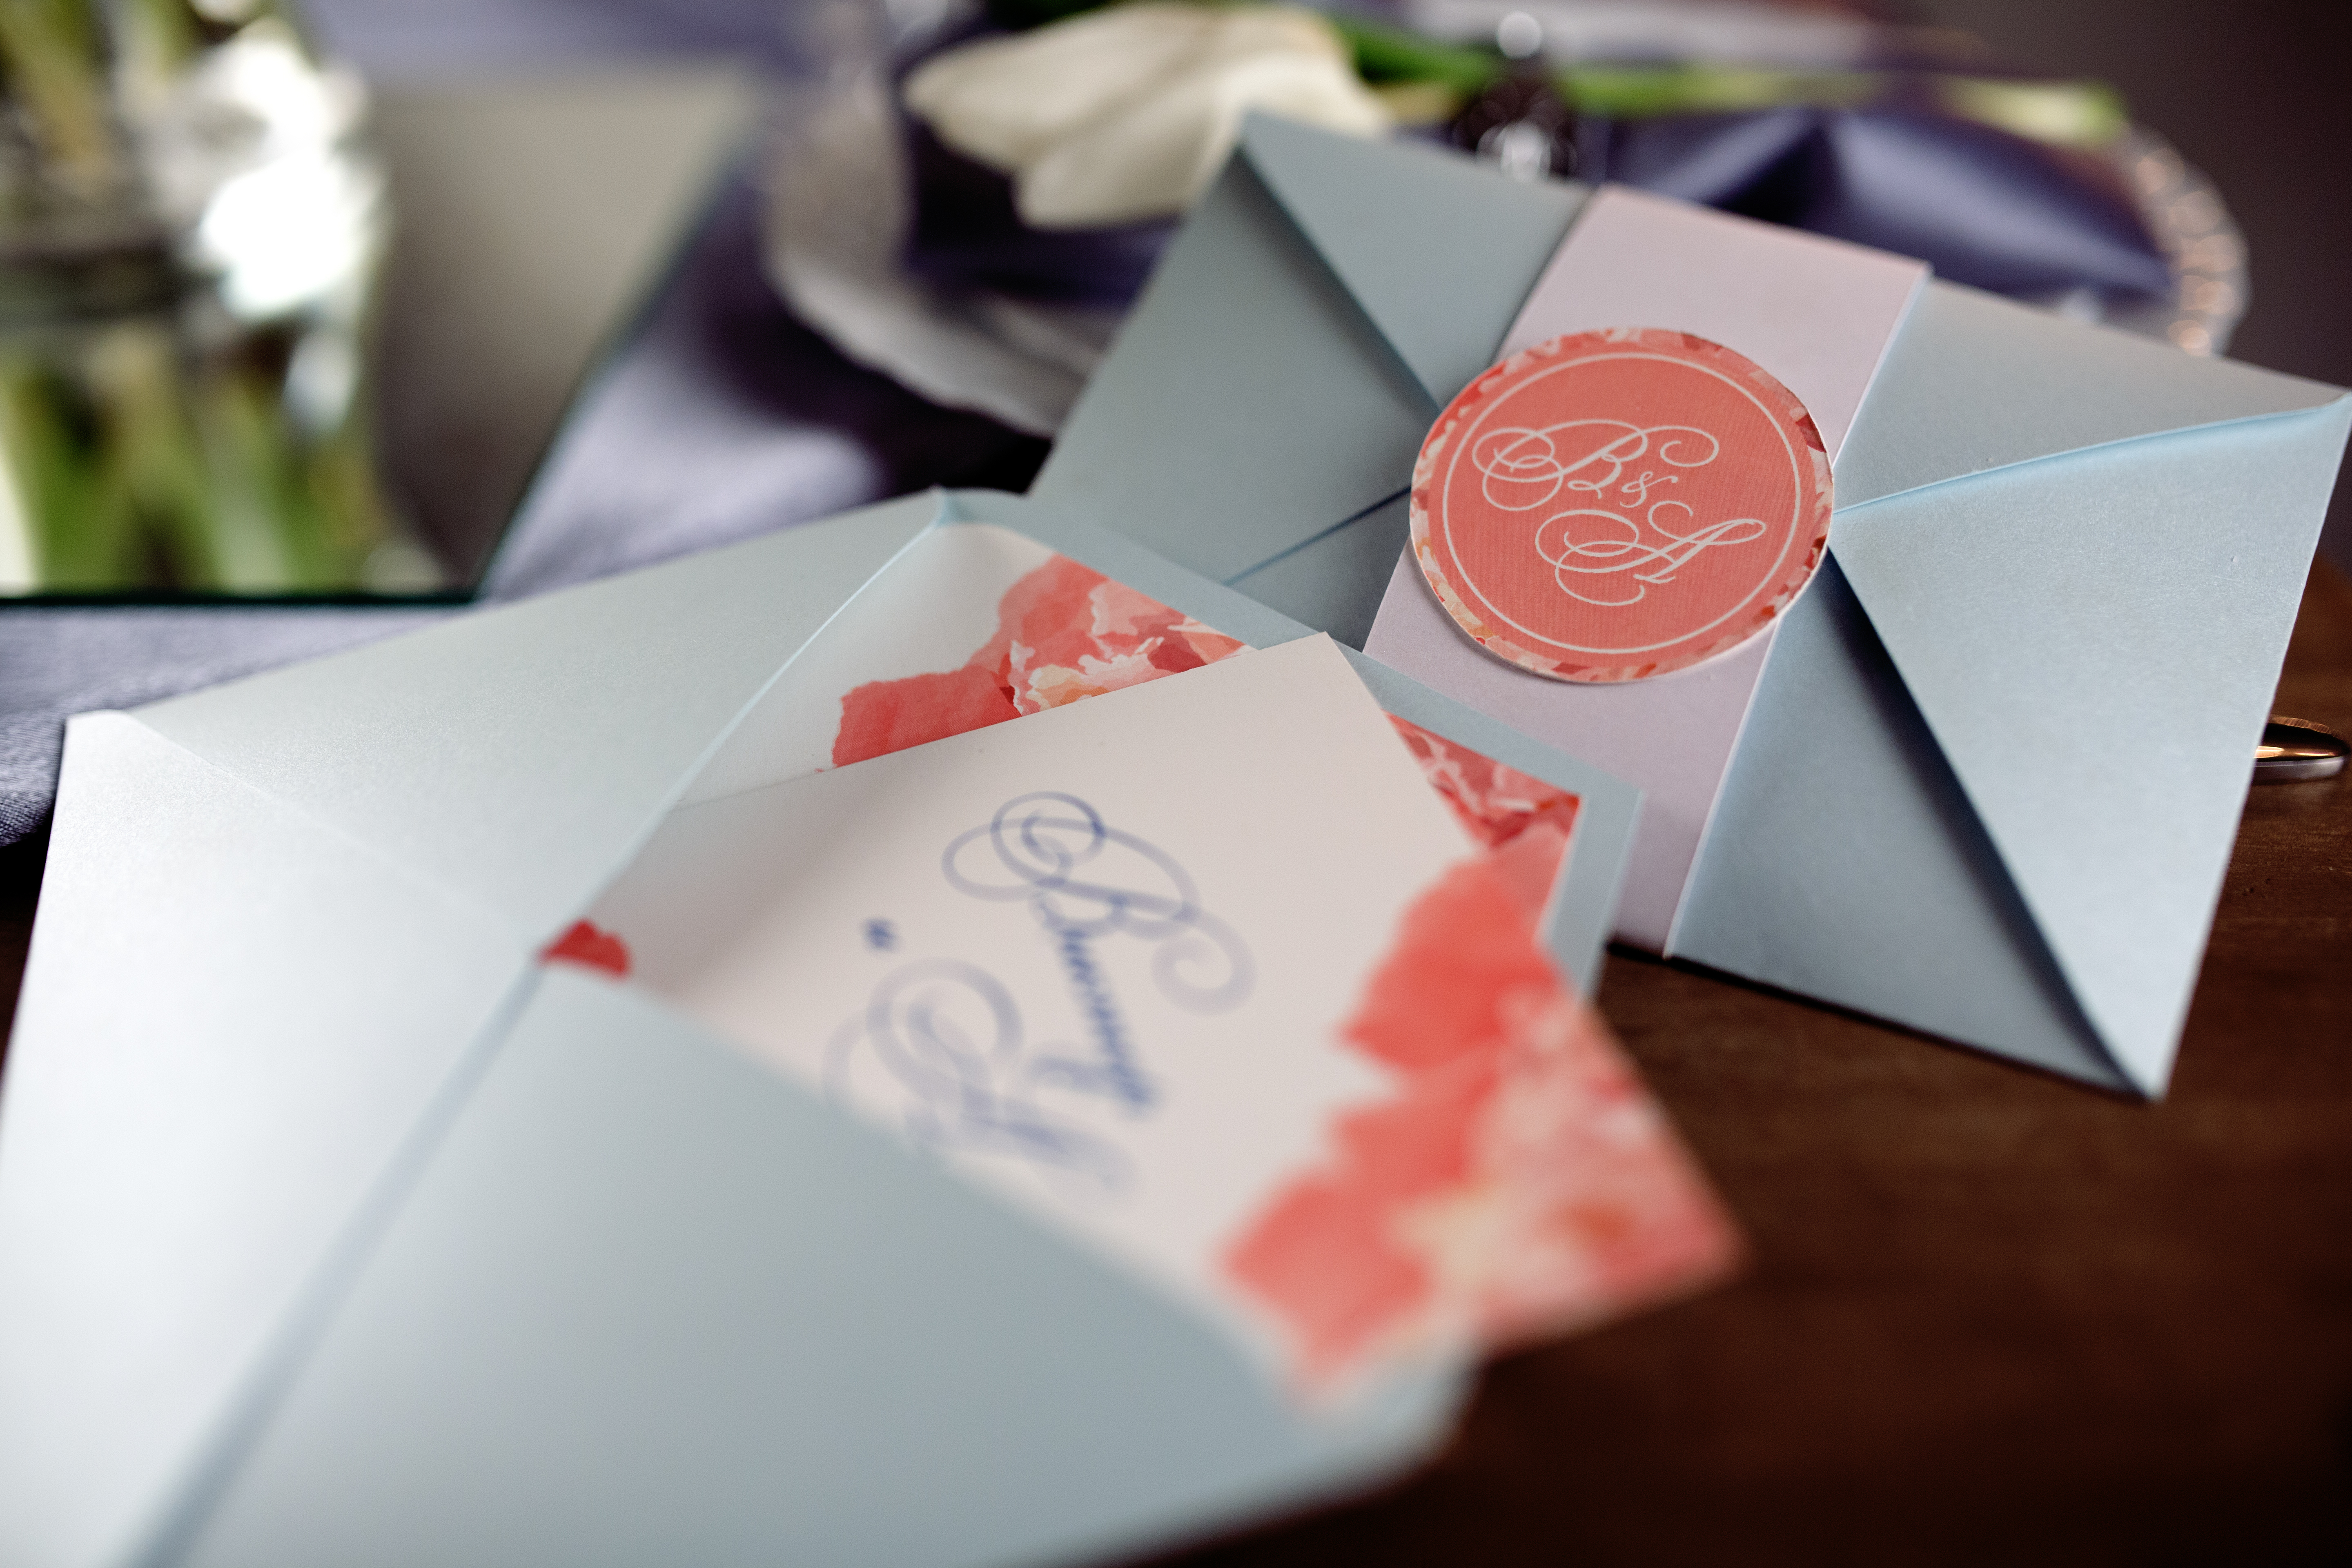 Enveloppes contenant des invitations de mariage | Source : Shutterstock